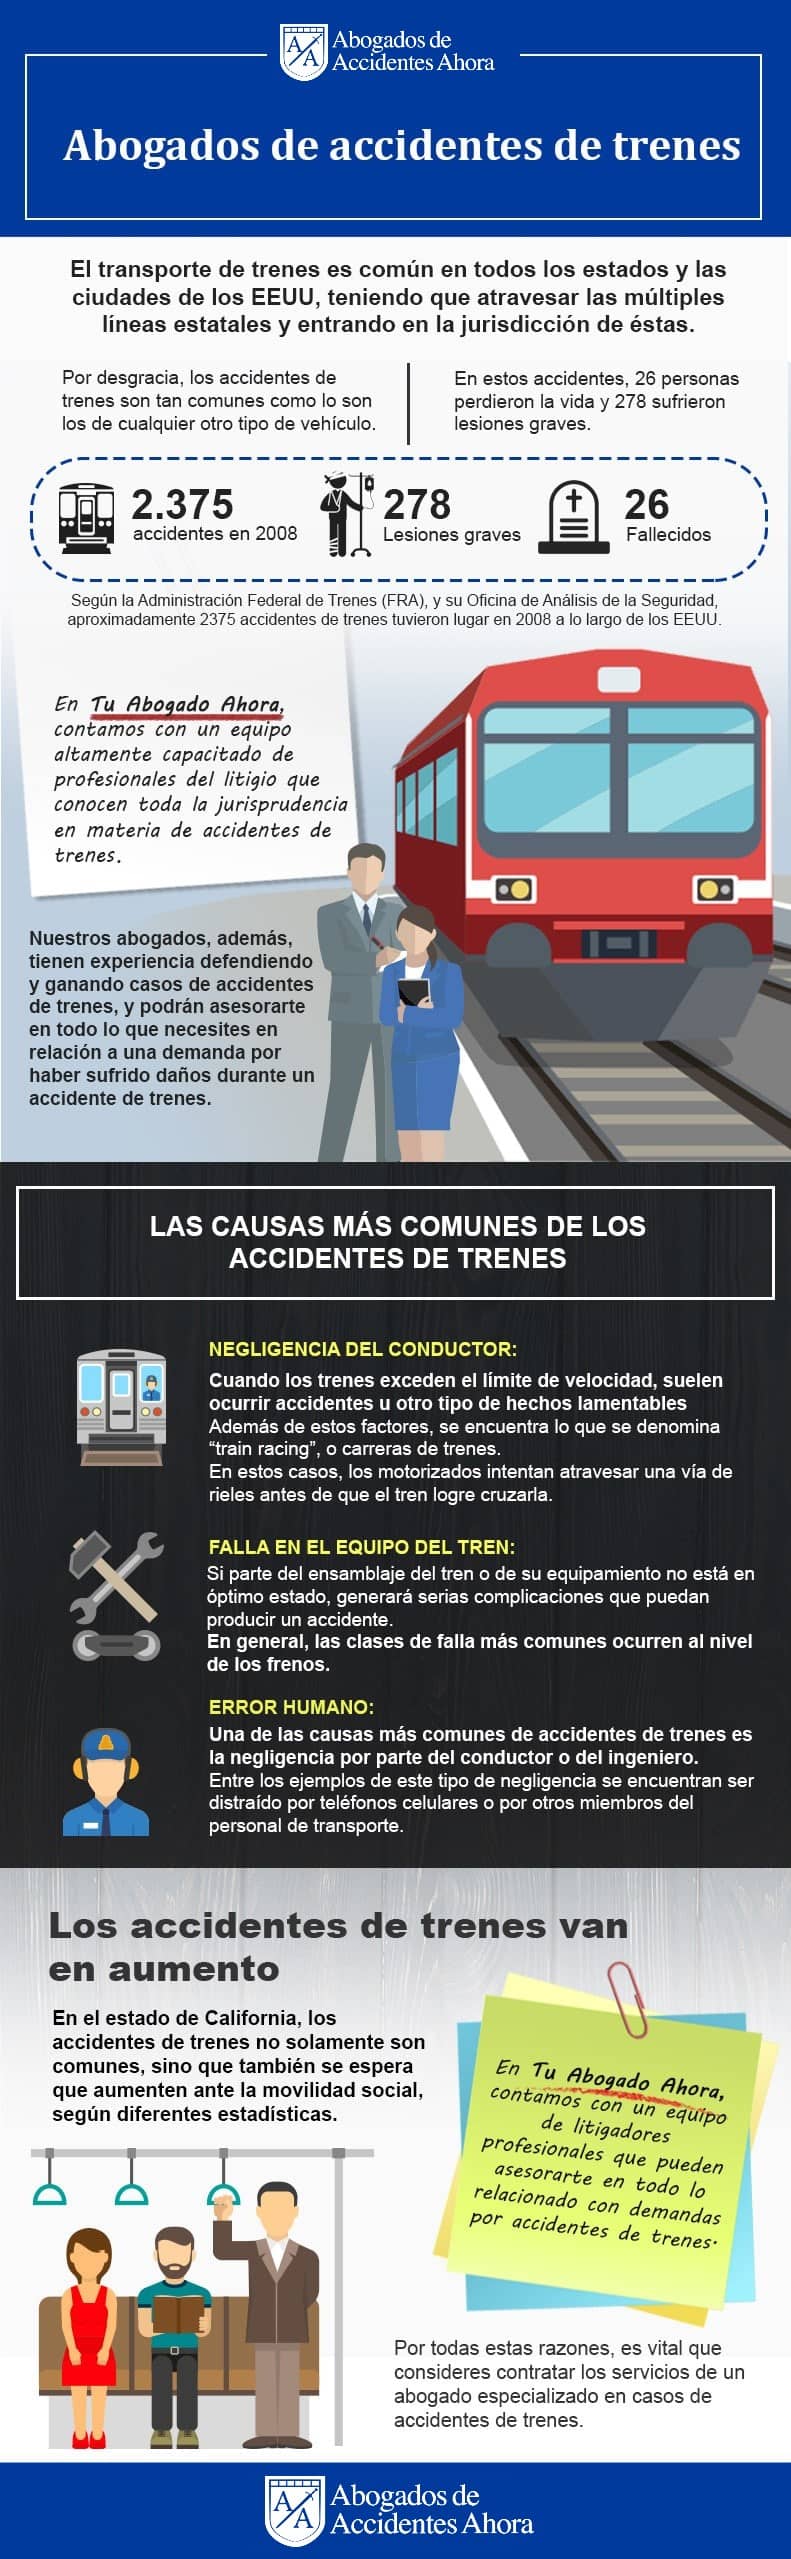 Las causas más comunes de los accidentes de tren, Abogados de Accidentes Ahora